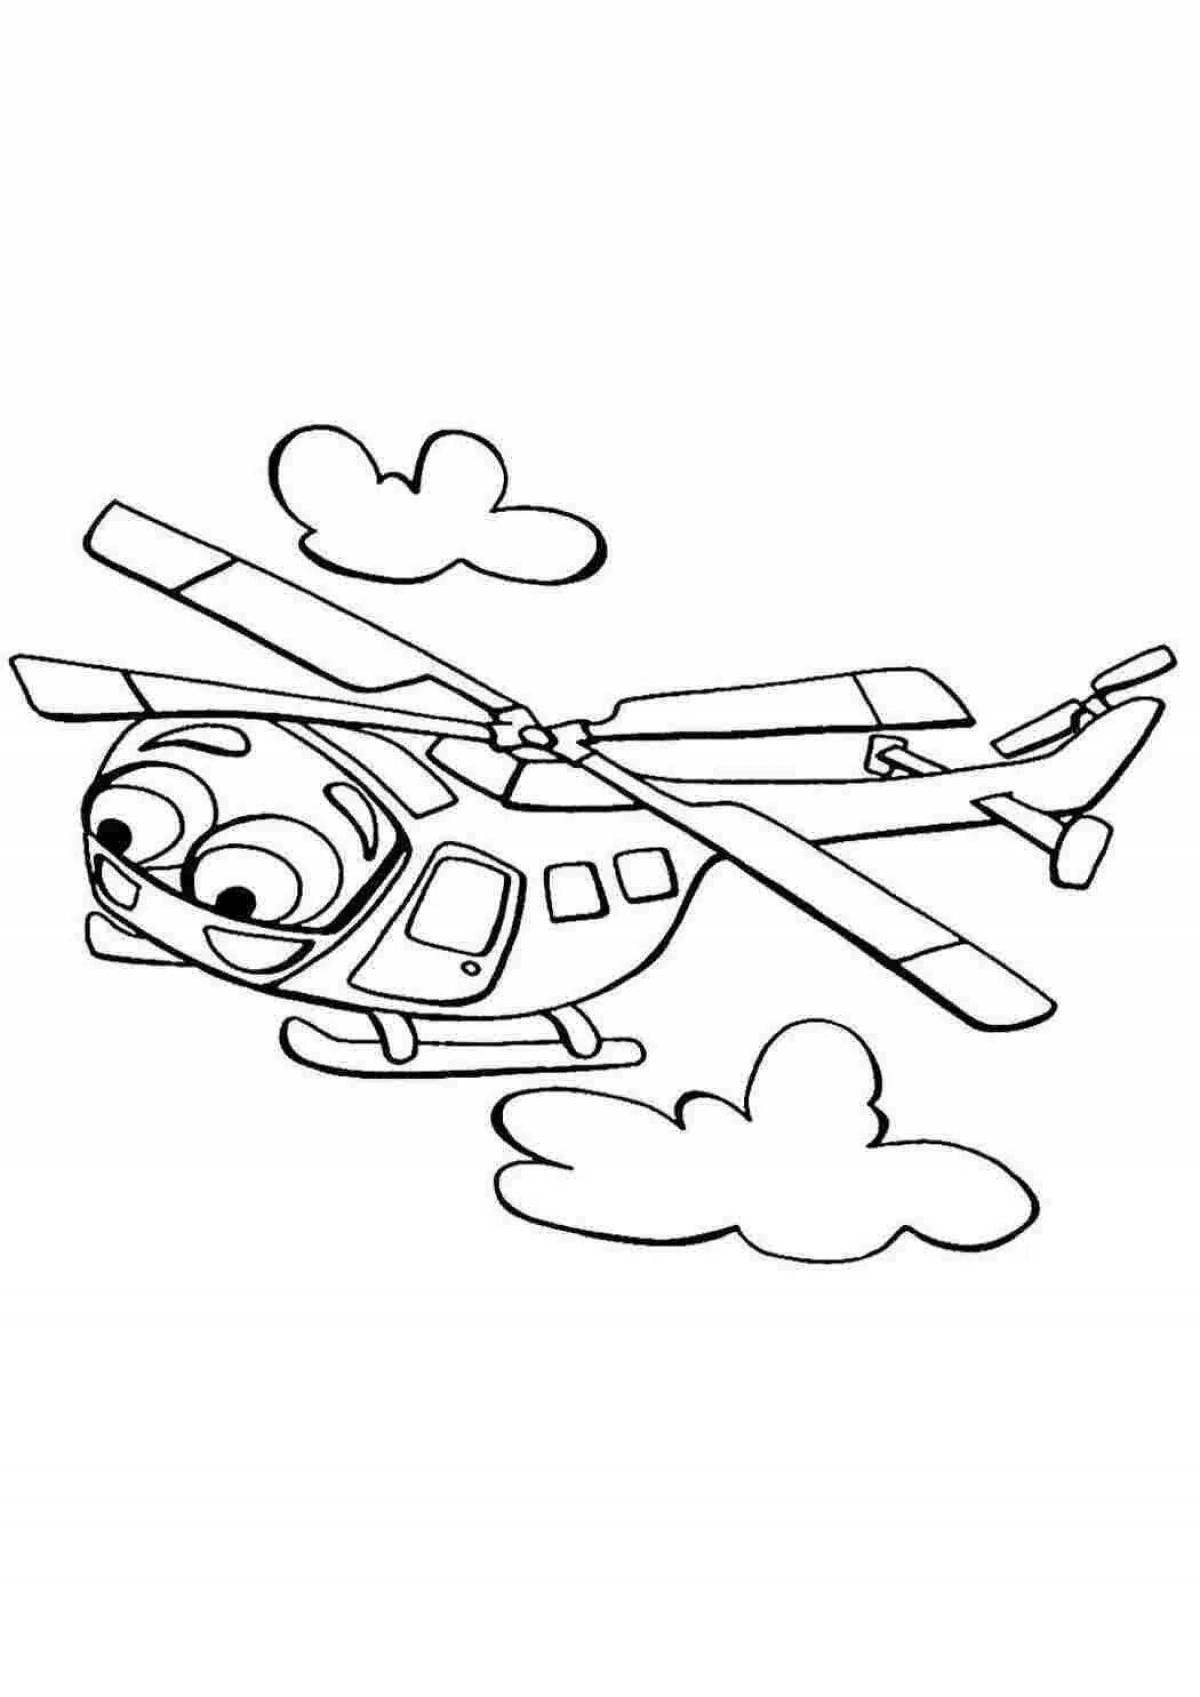 Увлекательная детская раскраска вертолета